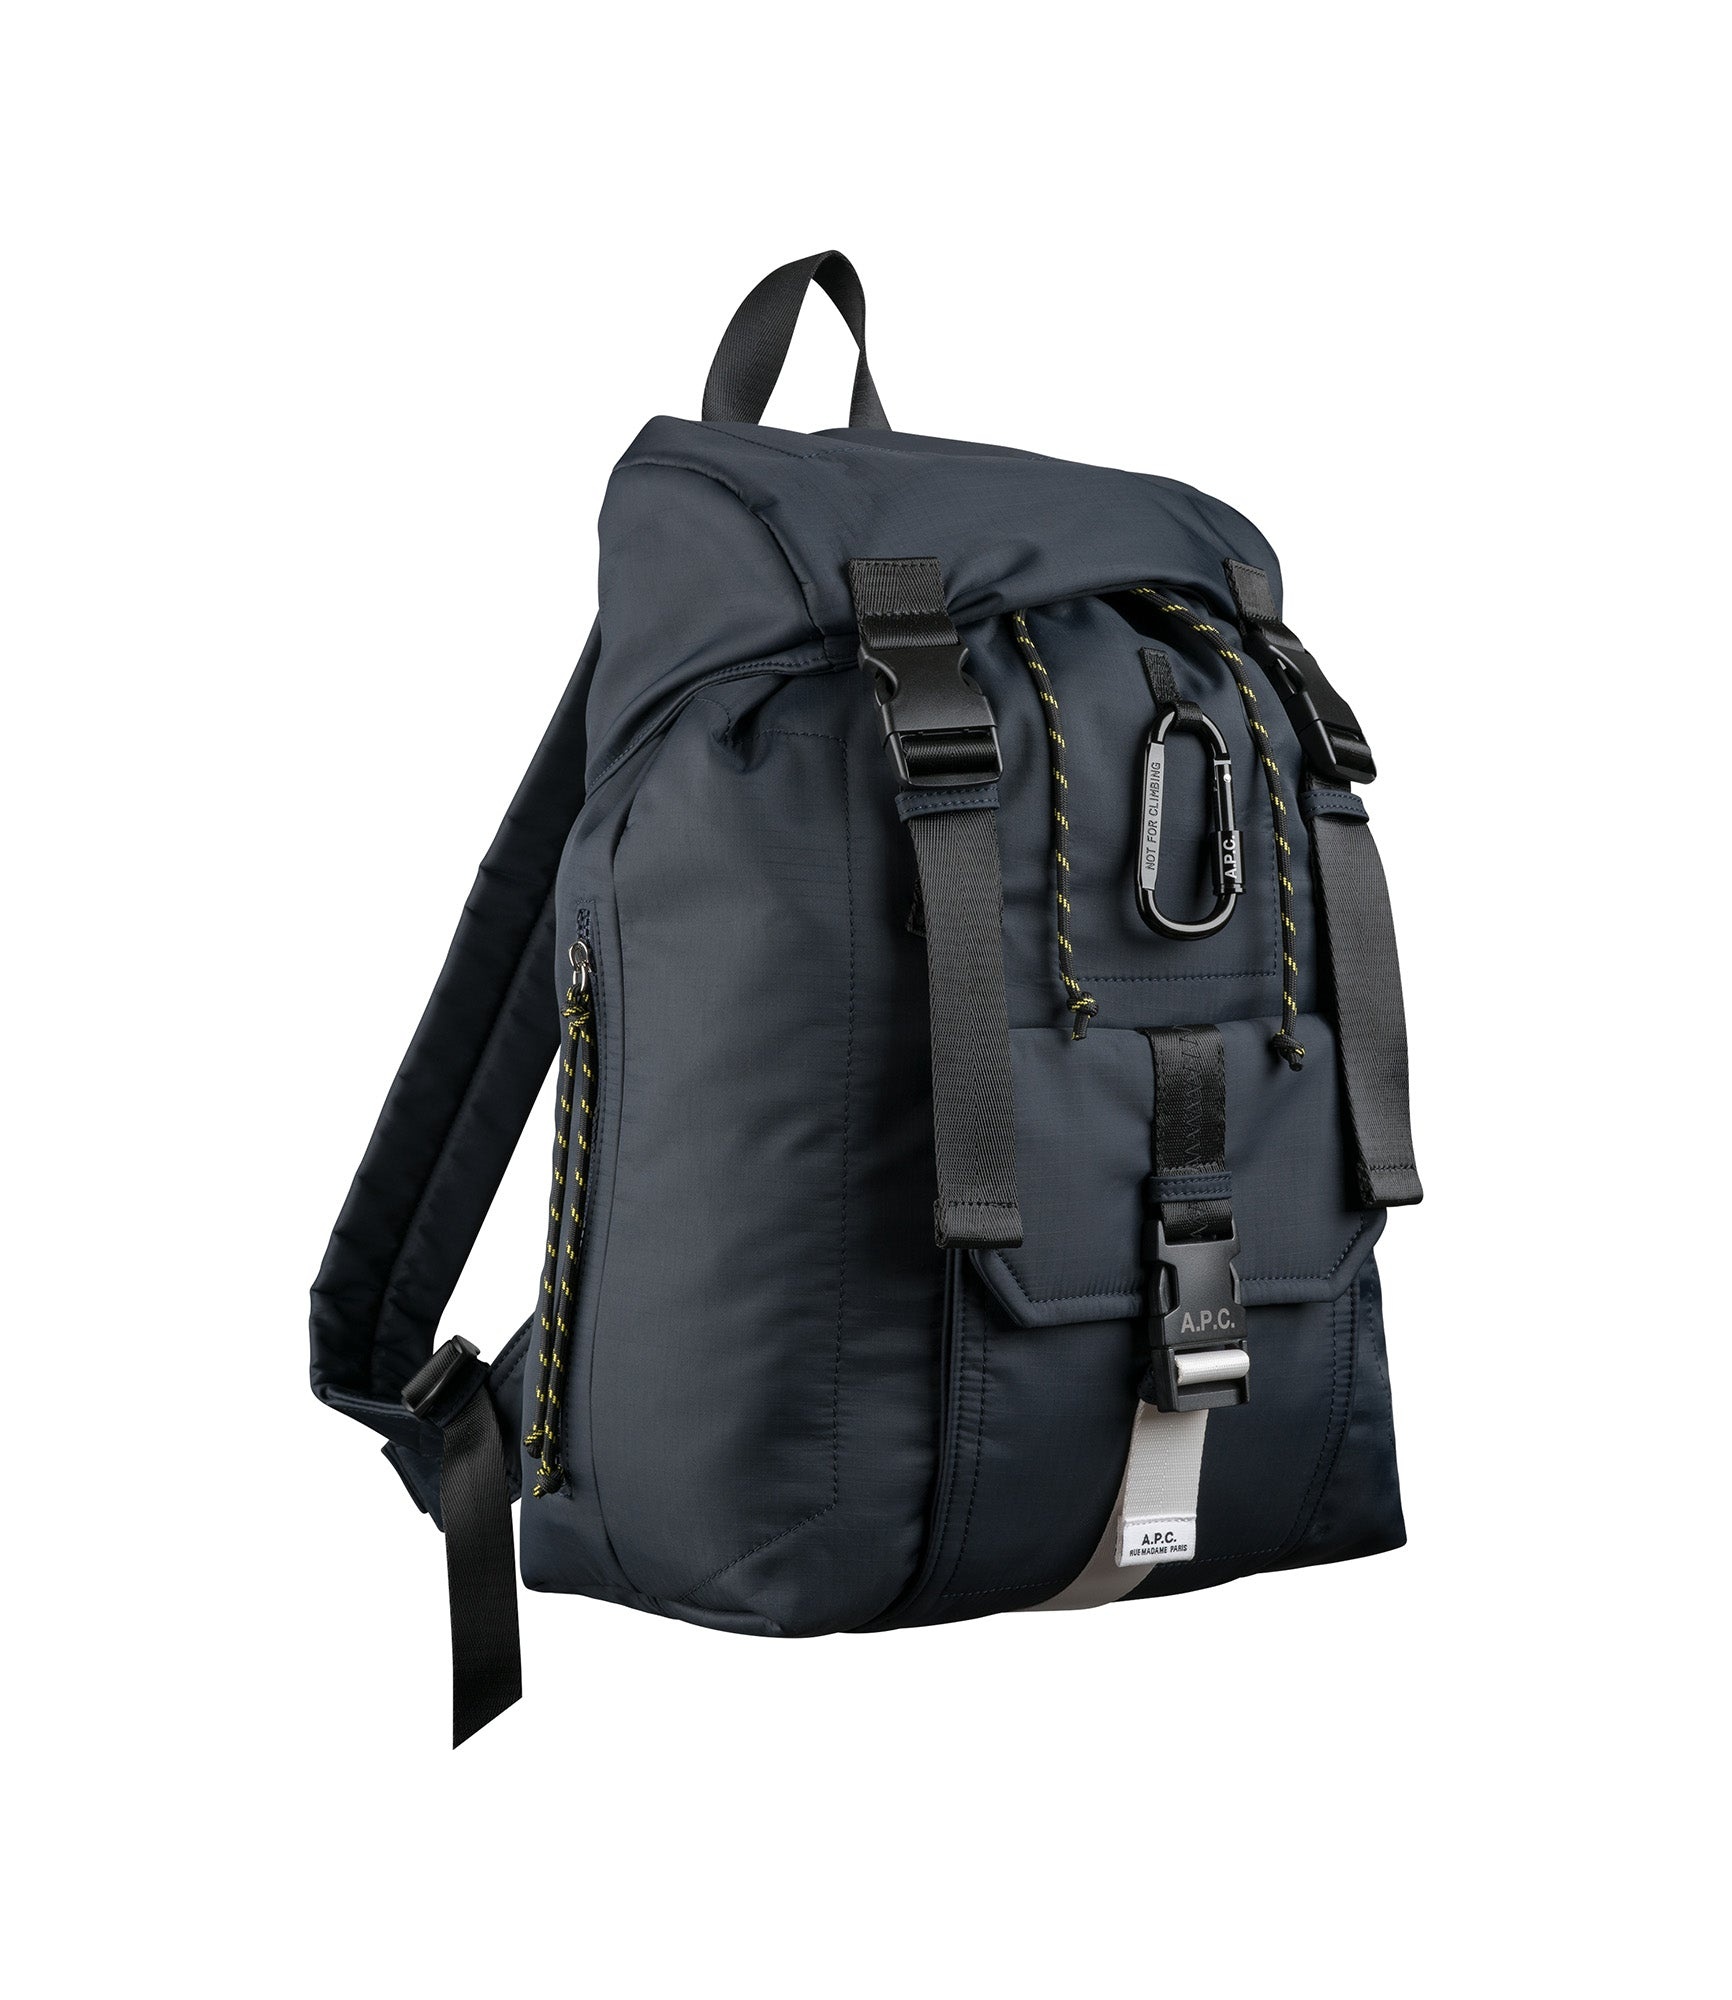 Treck backpack - 4